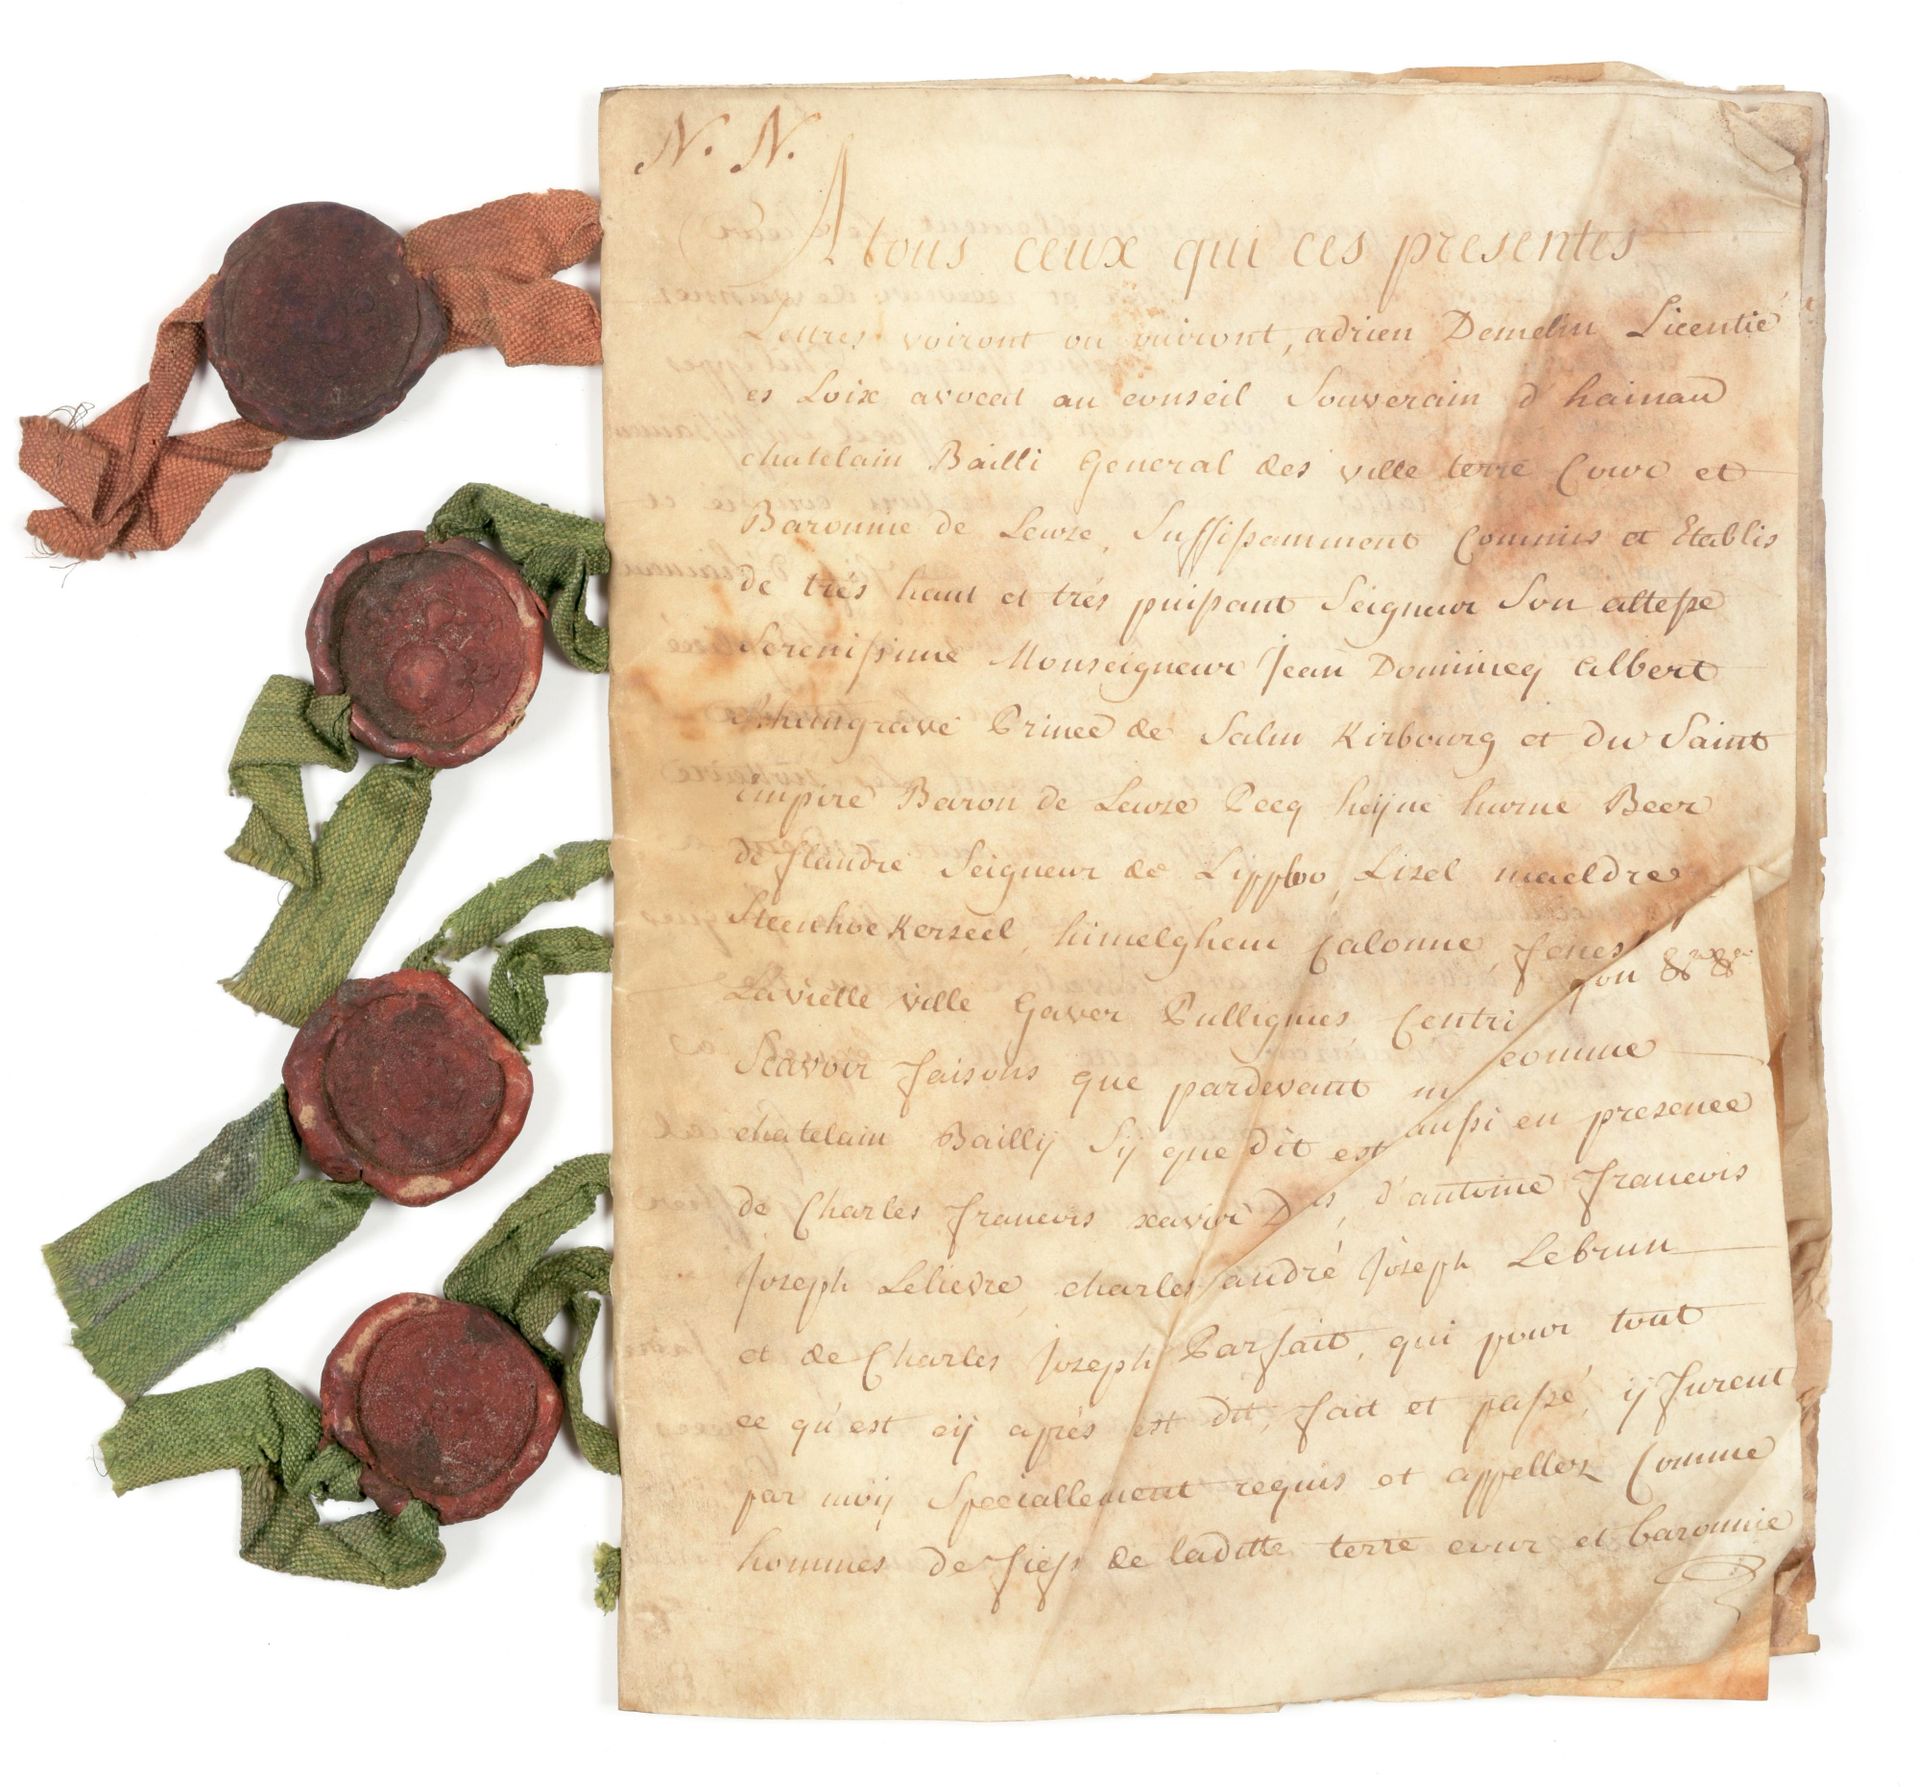 [DENOMBREMENT] Carta de enumeración

Manuscrito en tinta marrón sobre pergamino,&hellip;